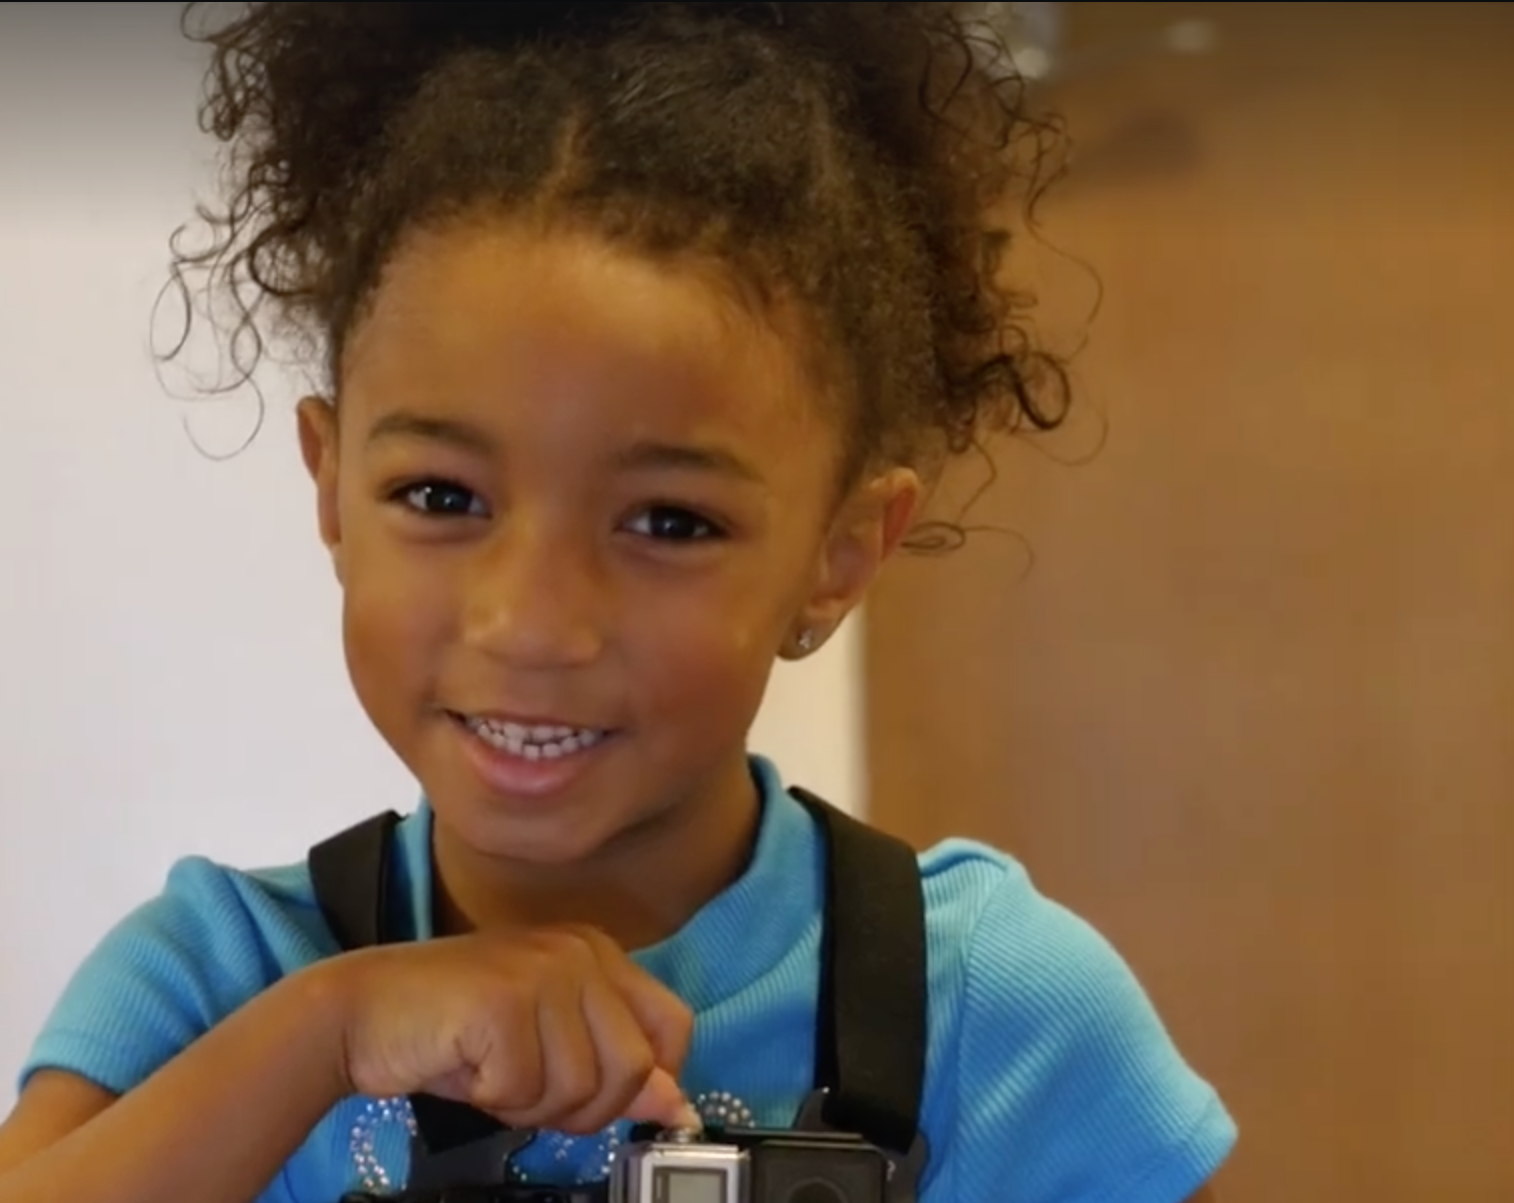 Com câmera fotográfica, menina registra seu primeiro dia de aula no jardim de infância